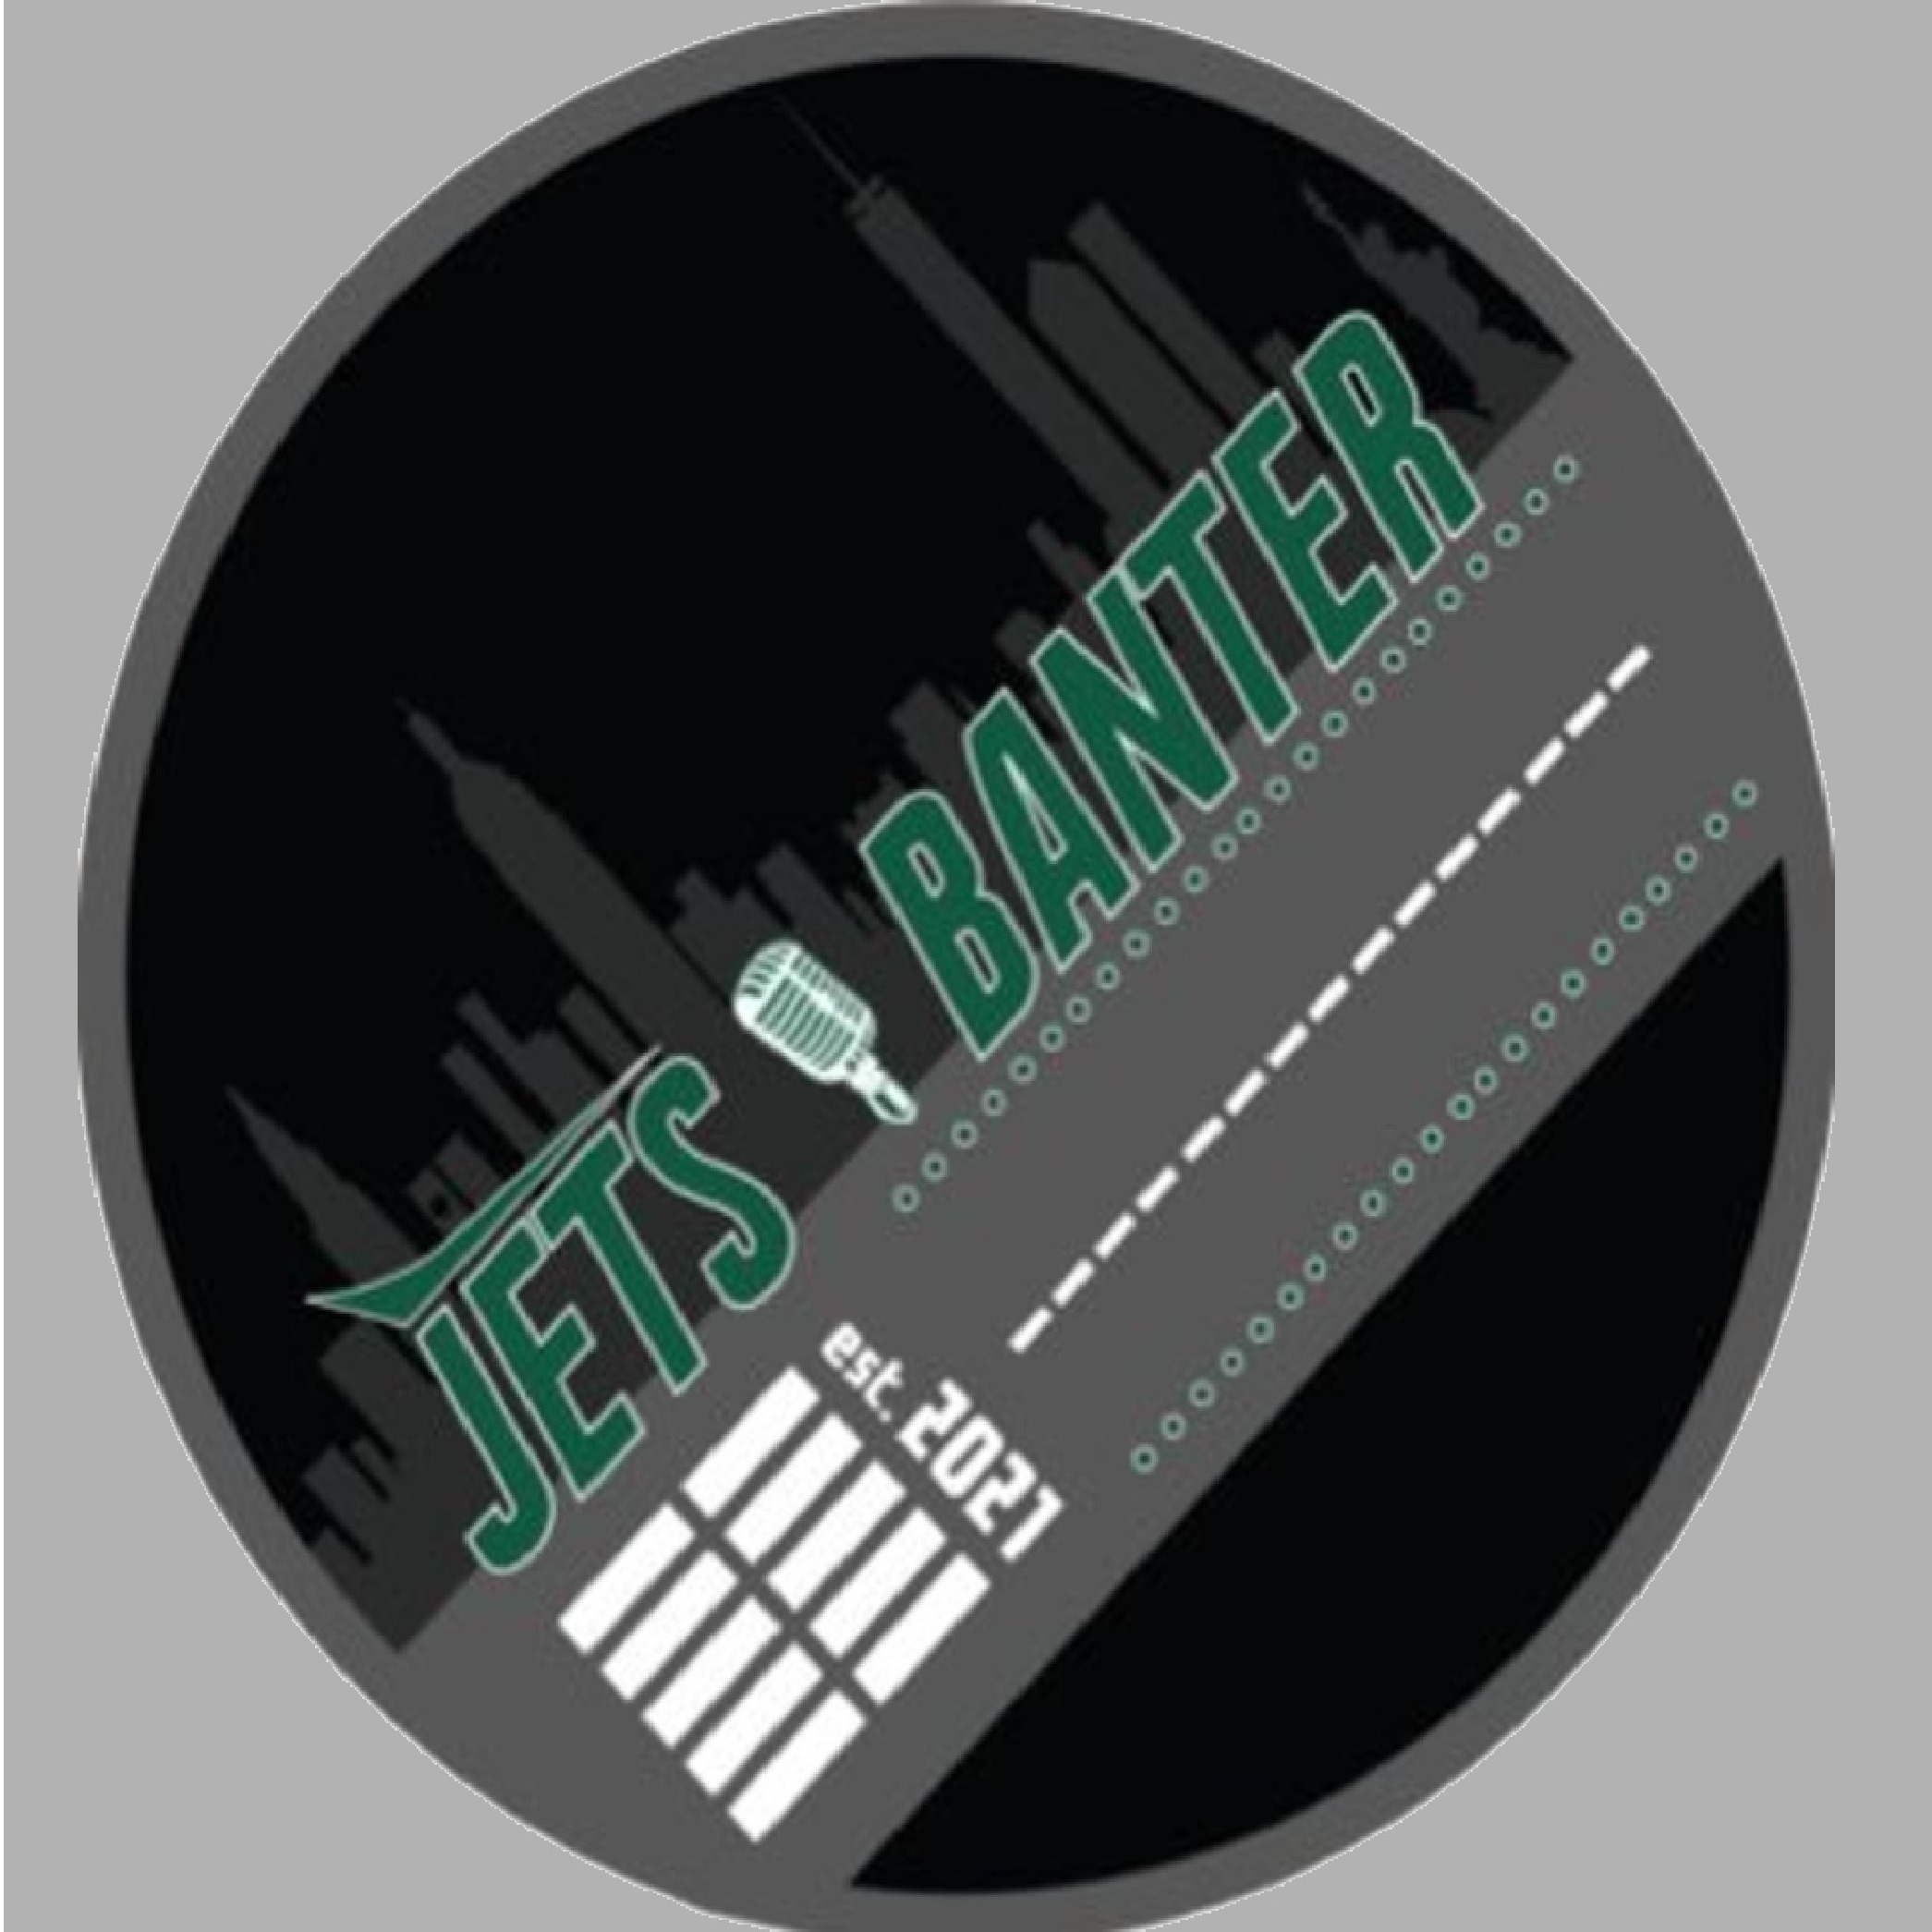 Jets Banter